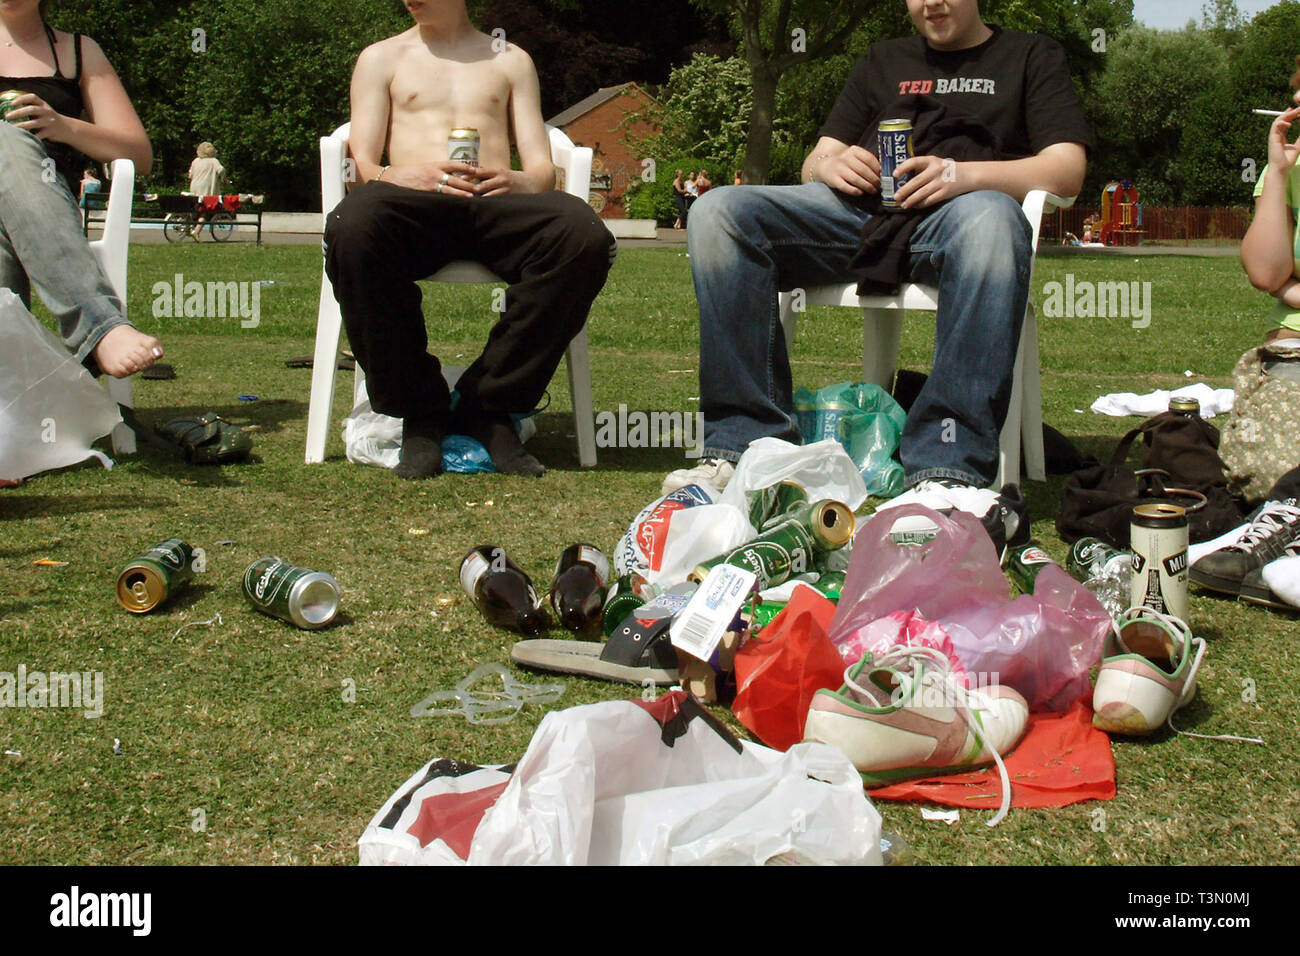 Les garçons et les filles de boire de l'alcool dans un parc. Leamington Spa. 22/06/2005 Banque D'Images